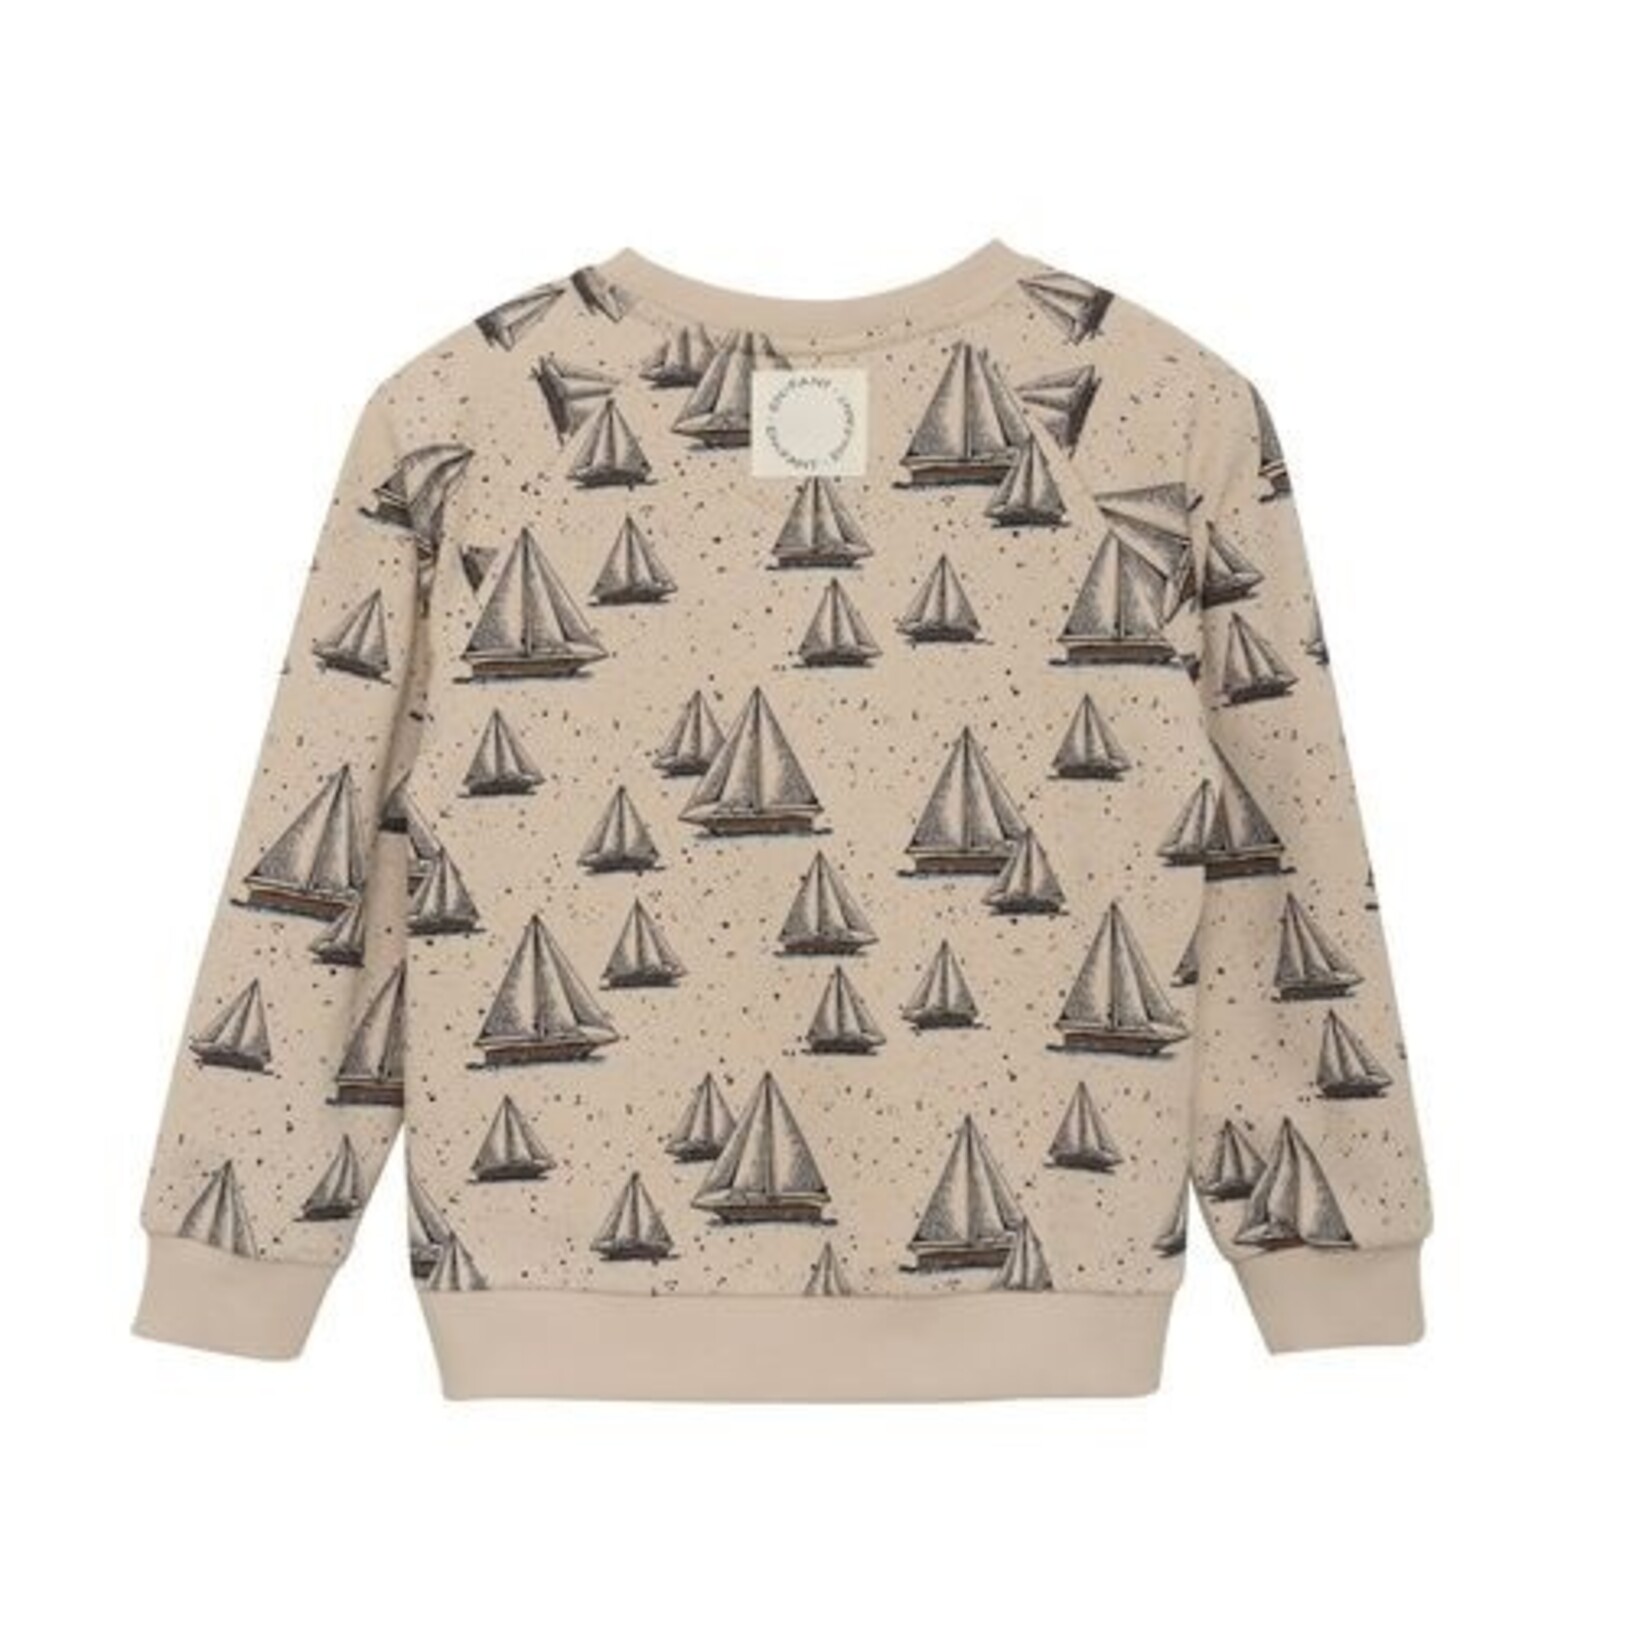 Enfant ENFANT - Light sweatshirt with allover sailing ship print